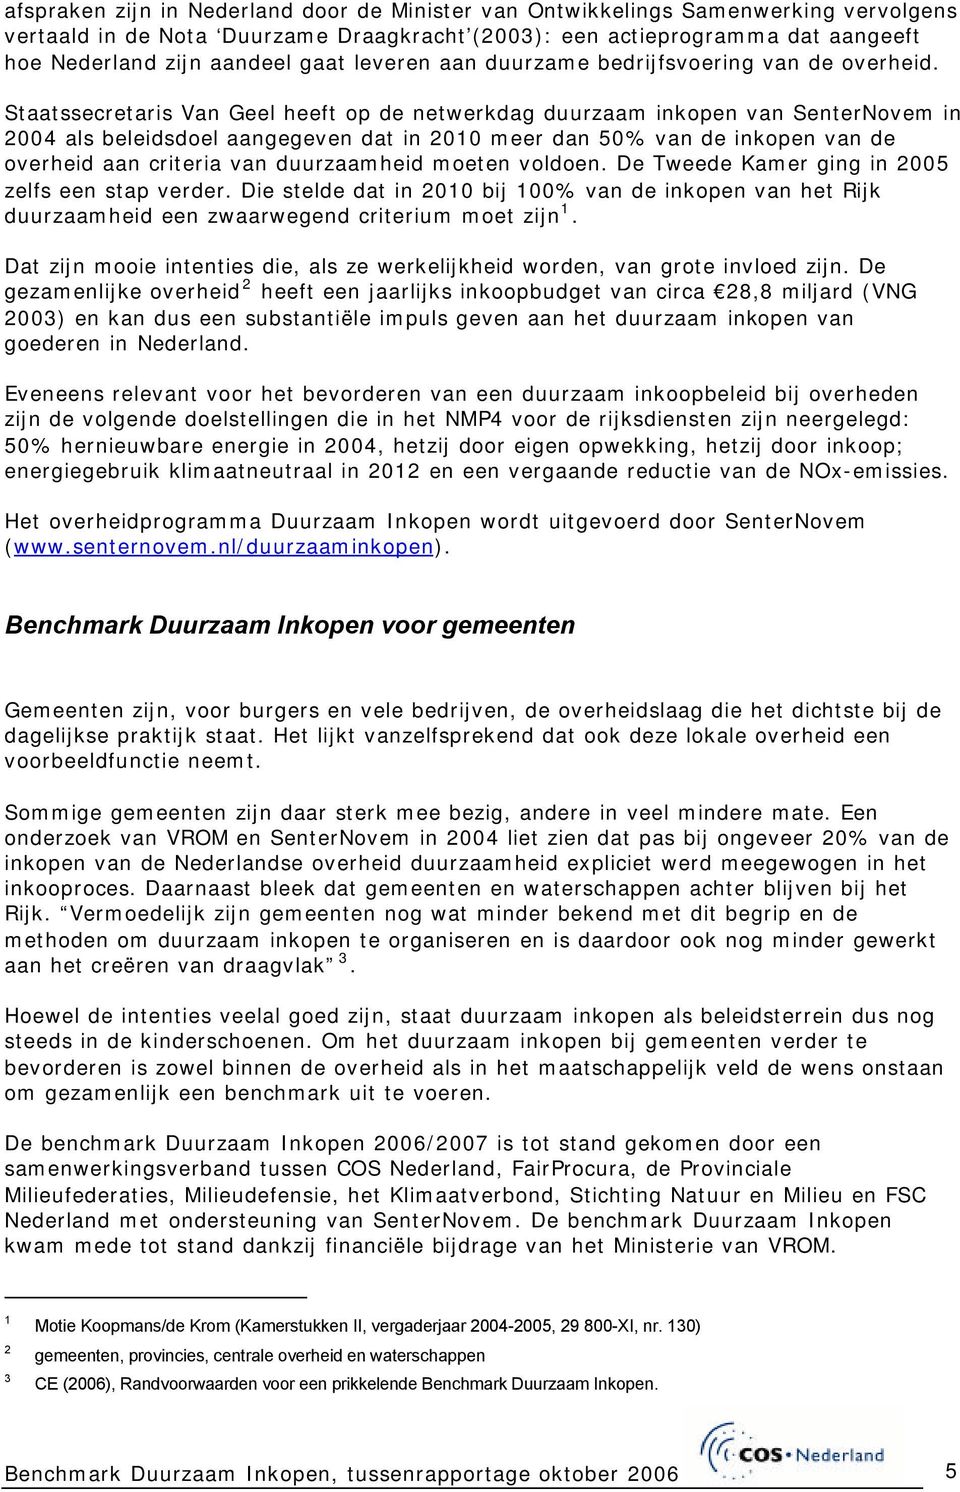 Staatssecretaris Van Geel heeft op de netwerkdag duurzaam inkopen van SenterNovem in 2004 als beleidsdoel aangegeven dat in 2010 meer dan 50% van de inkopen van de overheid aan criteria van